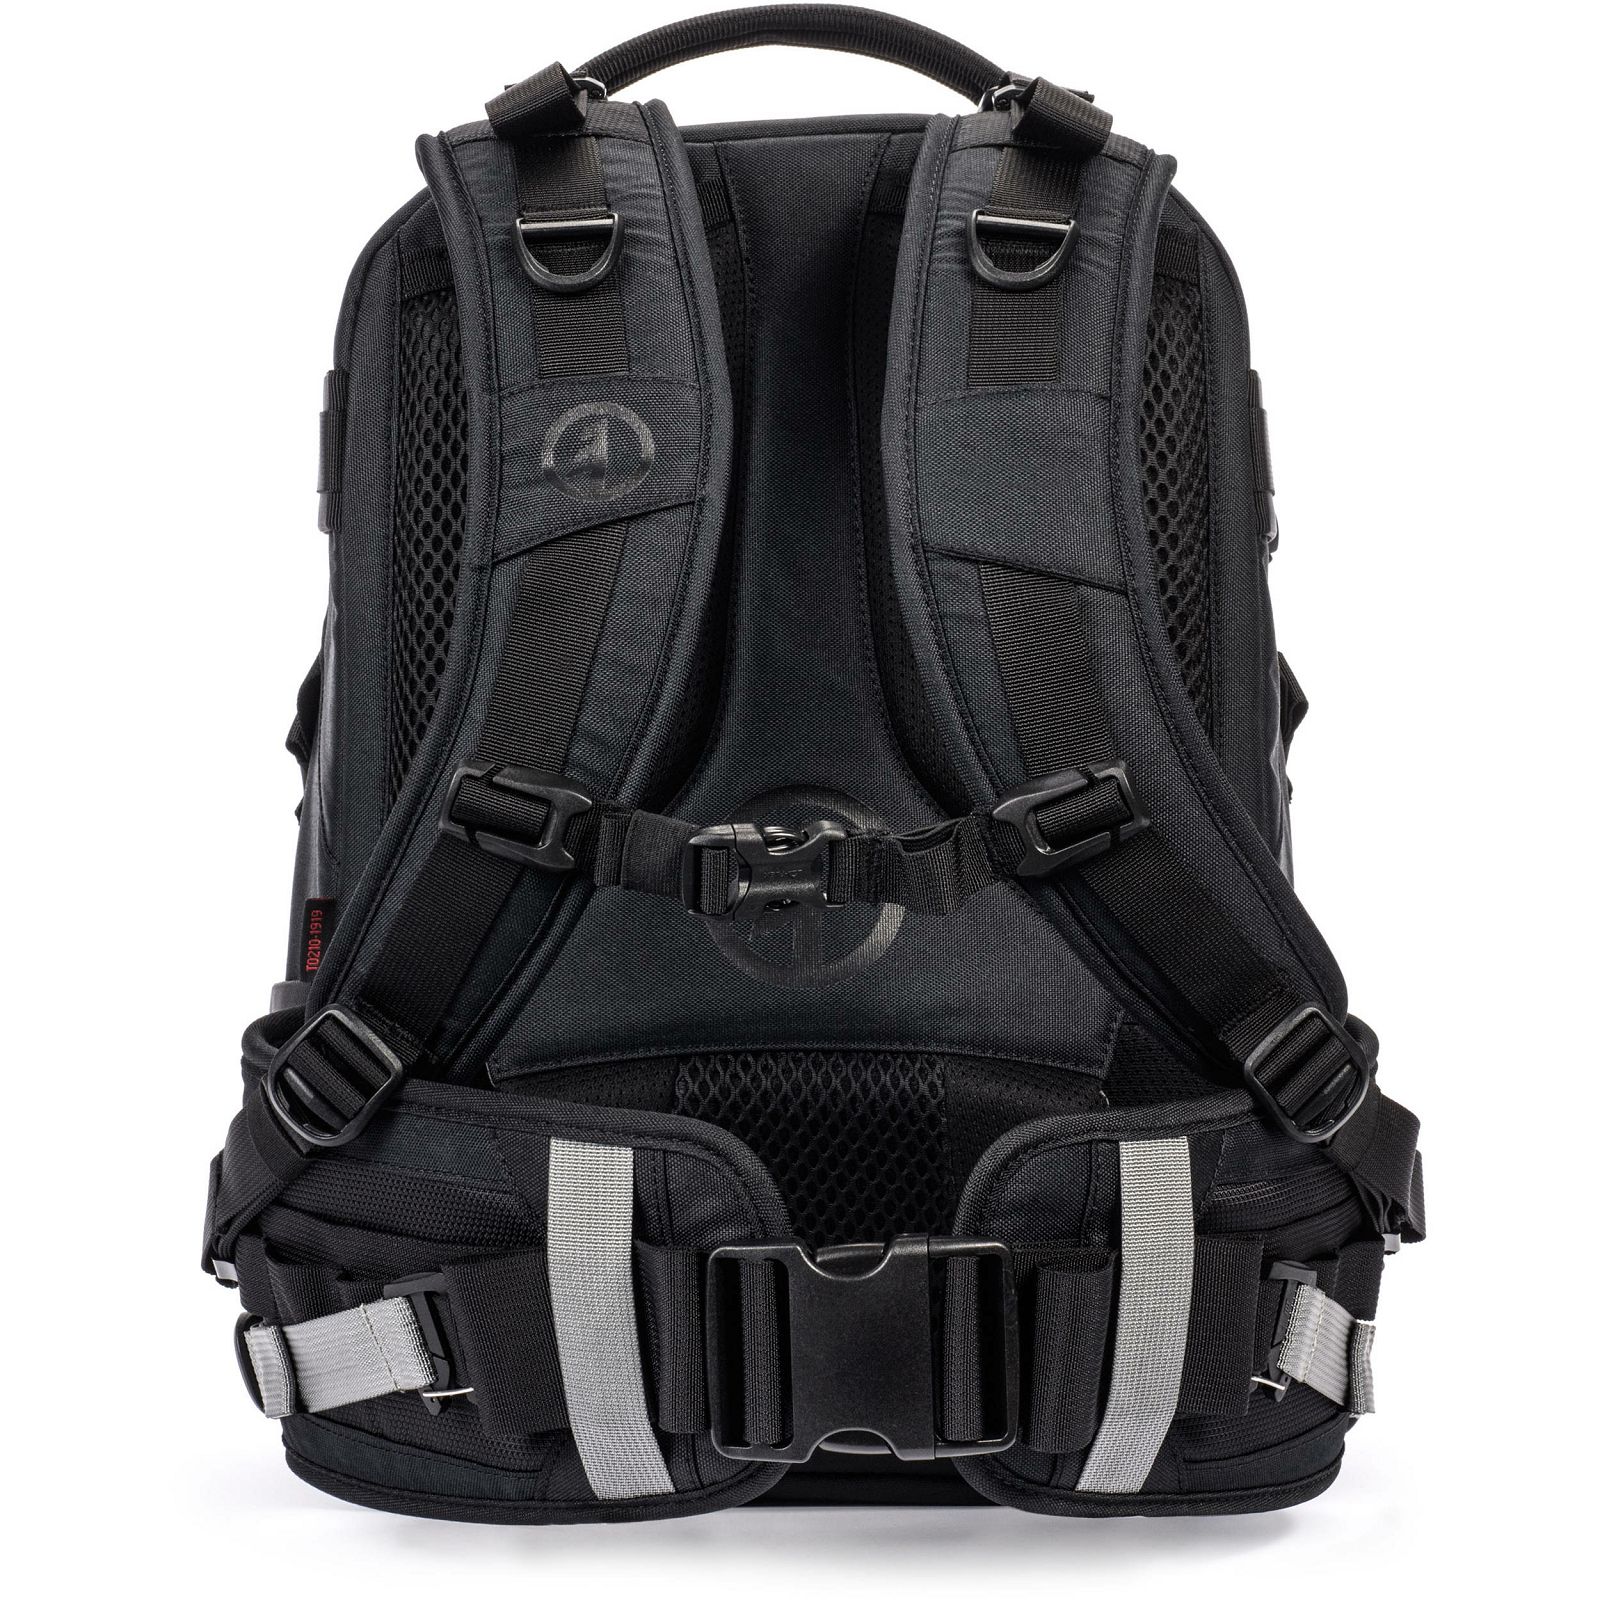 Tamrac Anvil Slim 11 Backpack Black crni ruksak za foto opremu (T0210-1919)